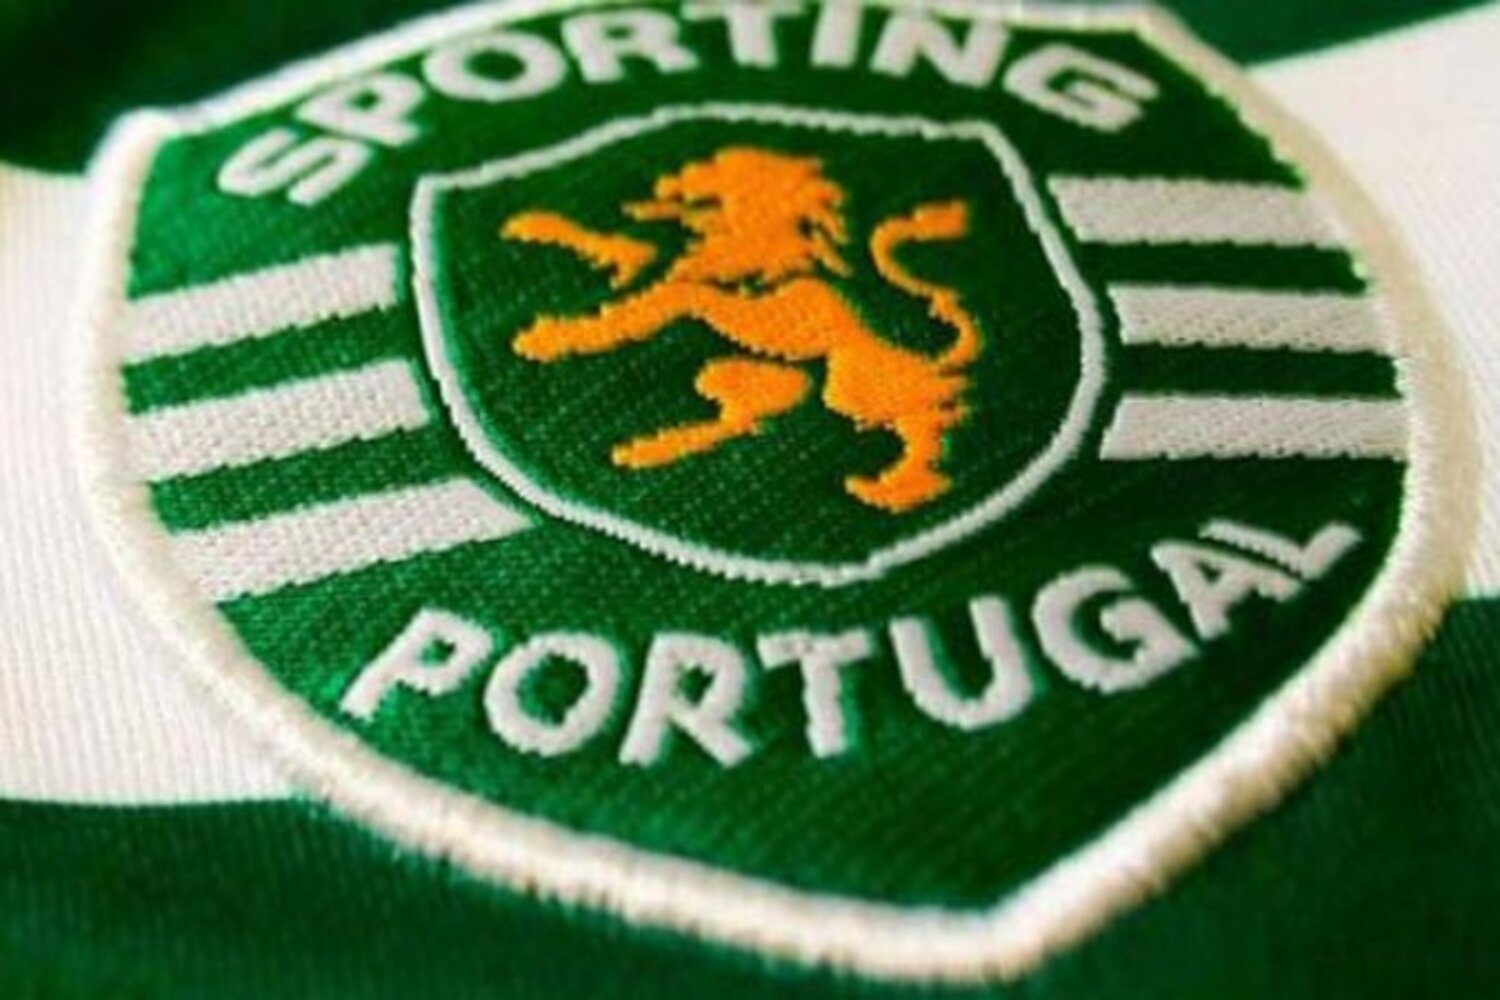 OFICJALNIE: Sporting mistrzem Portugalii. Dwudziesty tytuł w historii stał się faktem